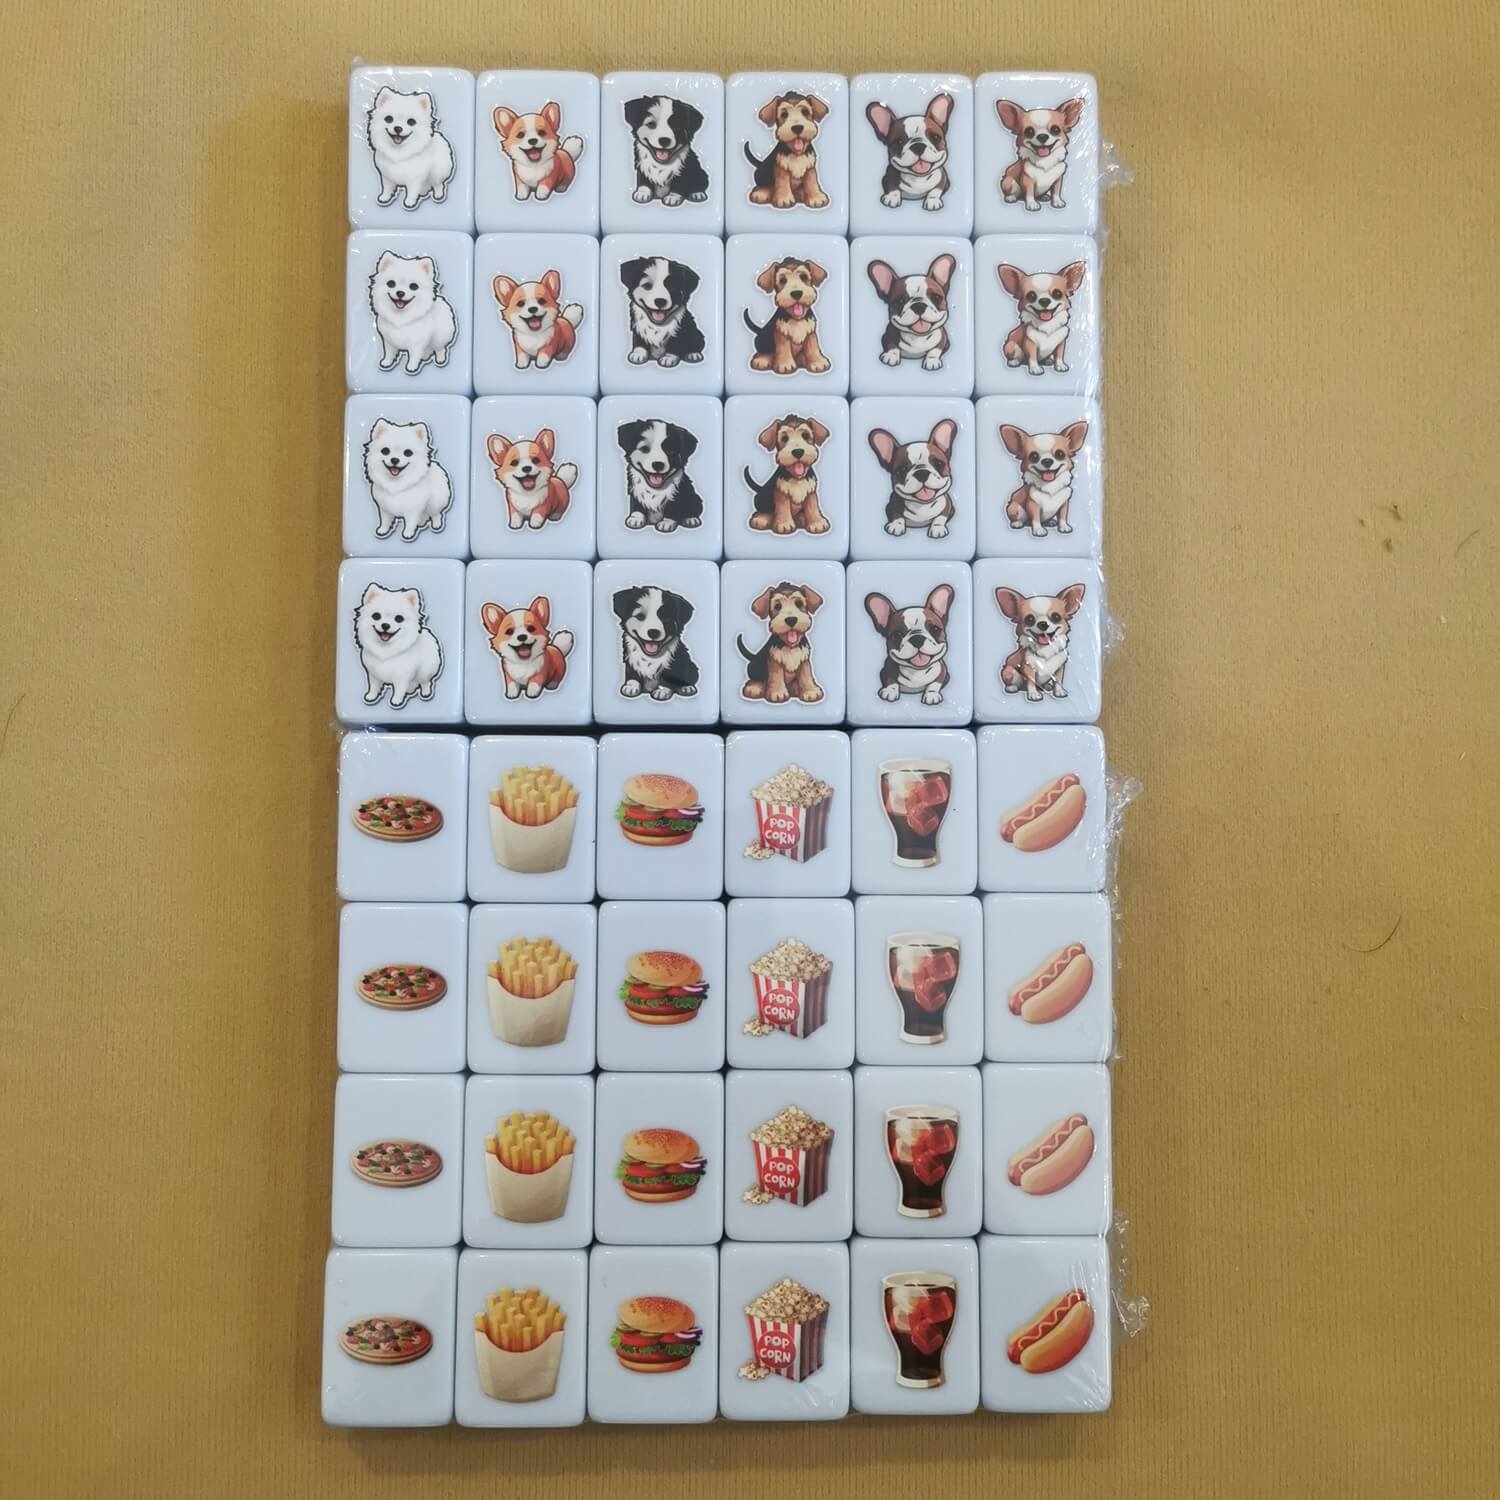 Seaside Escape Mahjong Tile Game 49 Blocks (Burger Vs Dog) Tiktok New Viral  Trending Rummy Dominos - DOREMI MALL - Seaside Escape Tile Game